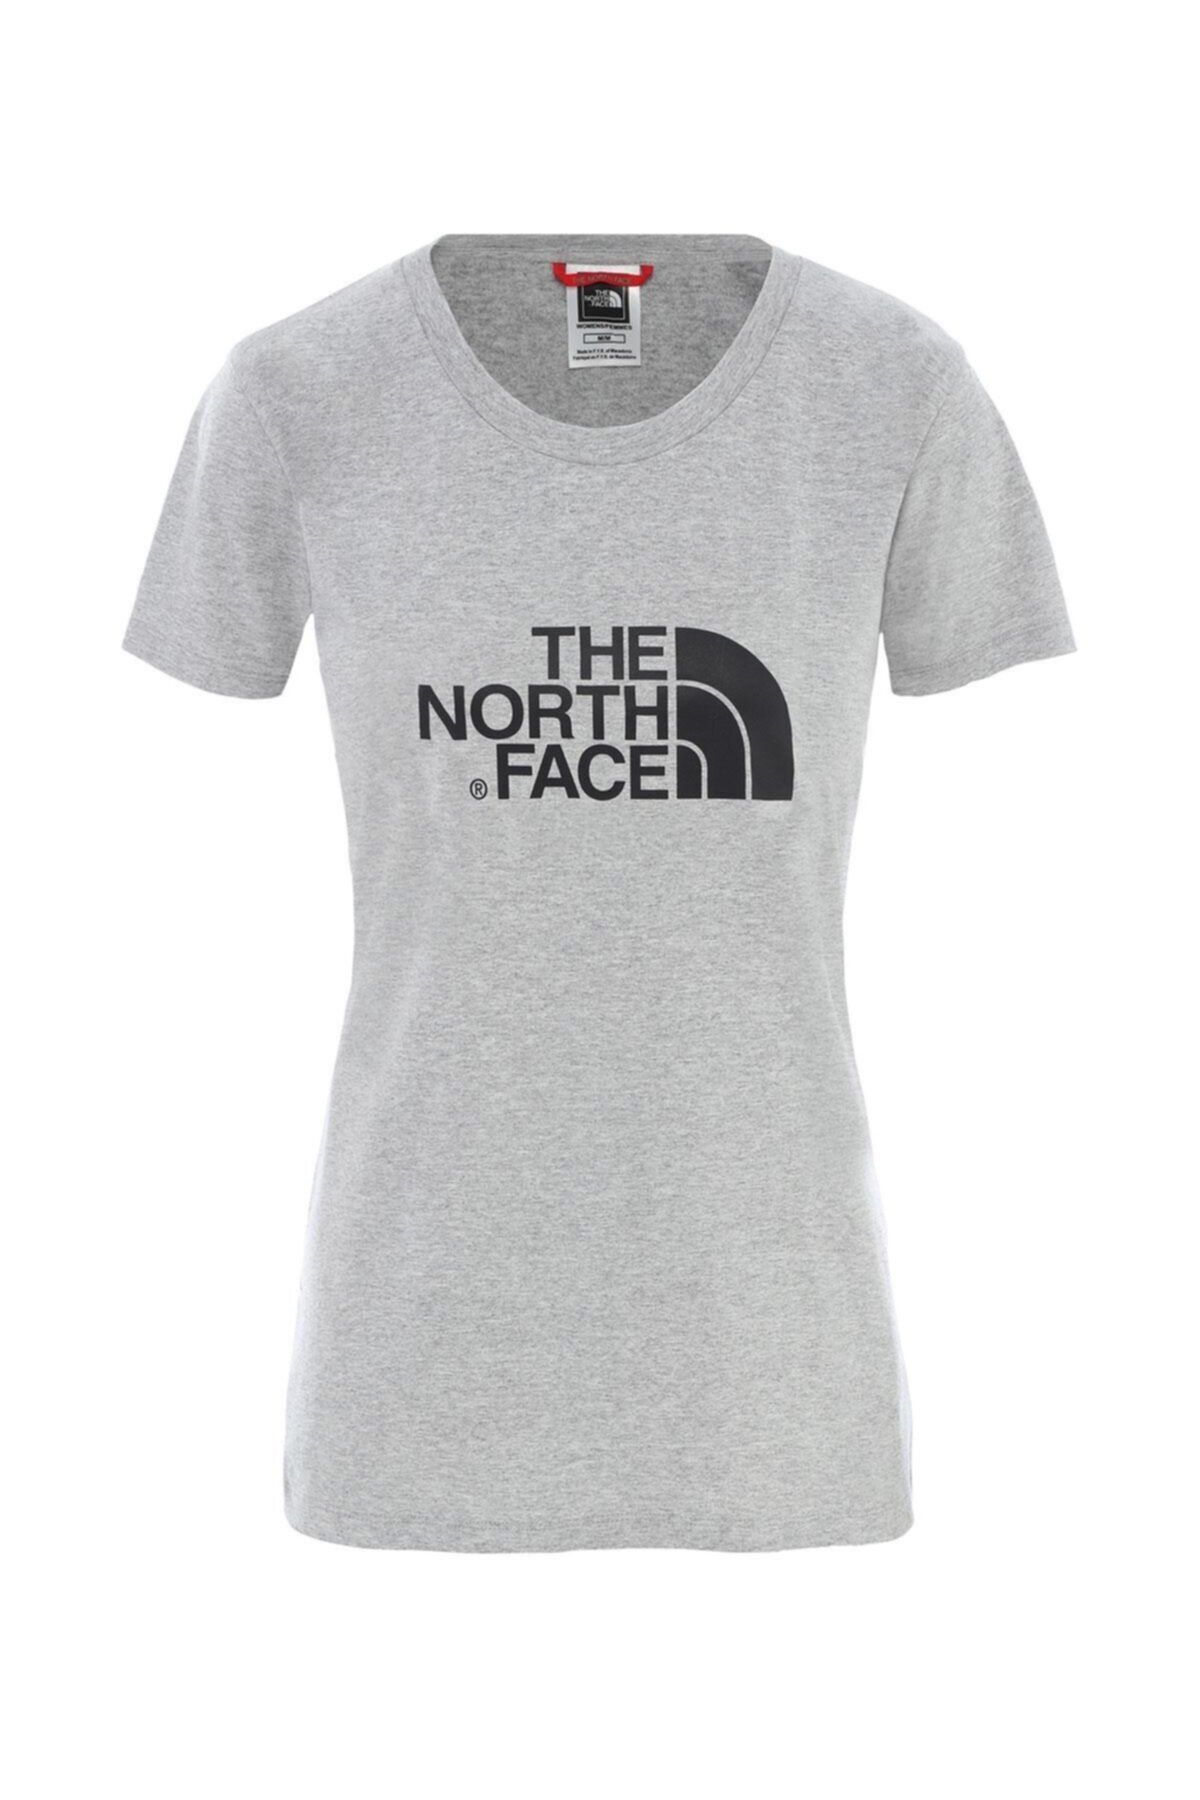 The North Face Kadın Gri Kısa Kol Tişört - Eu Nf00c256qg71